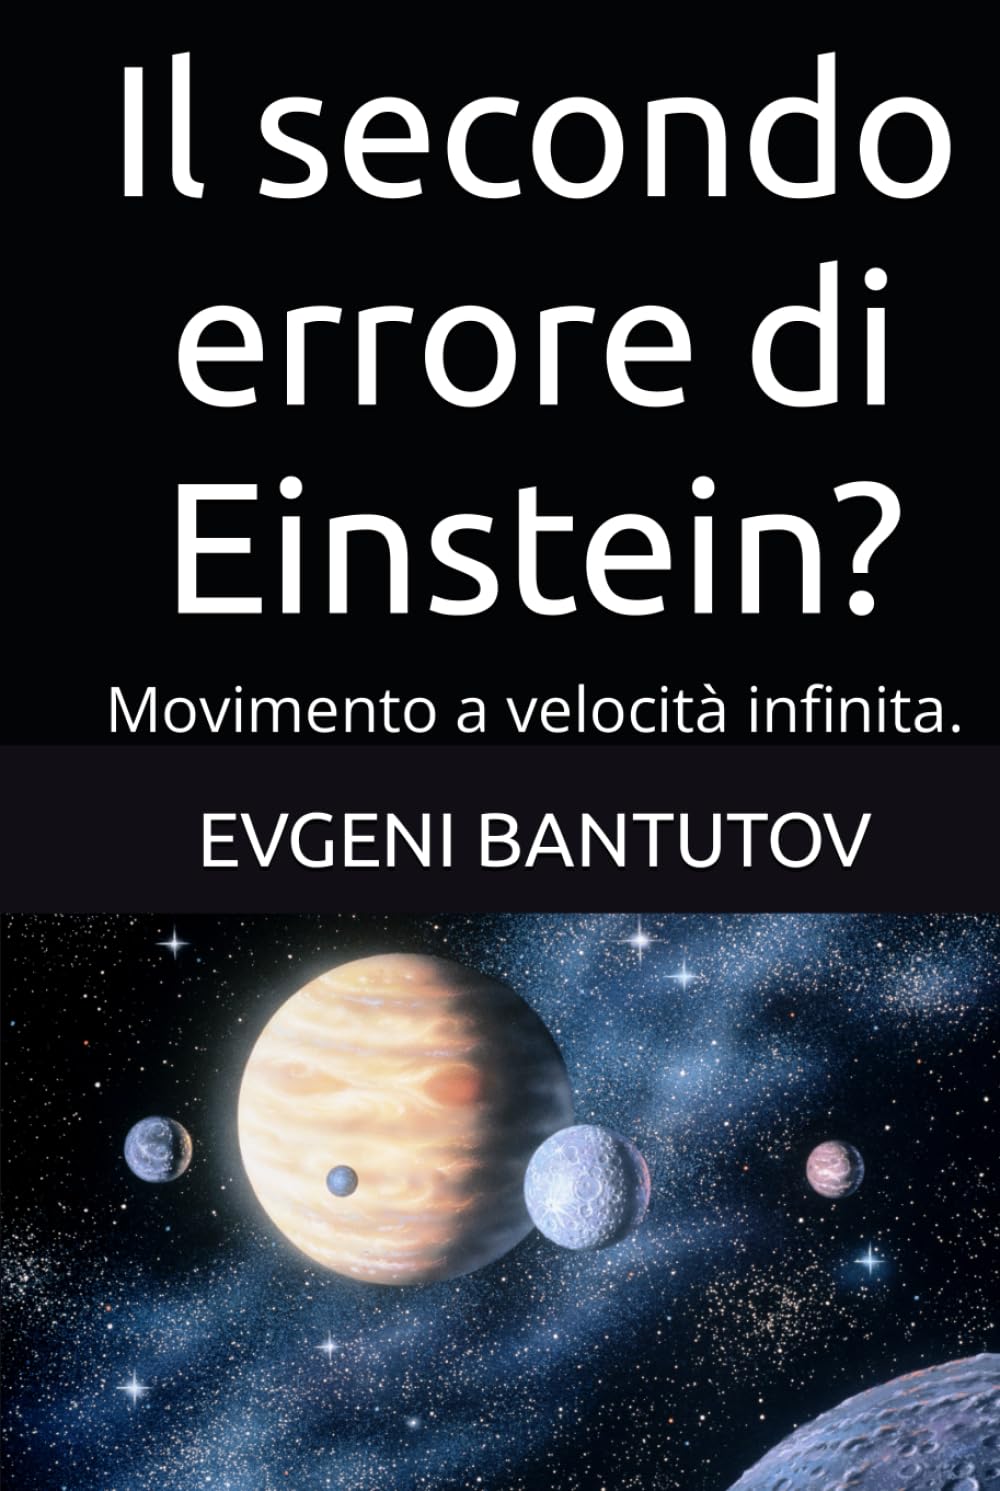 Il secondo errore di Einstein?: Movimento a velocità infinita. (Italian. Problemi della fisica moderna. Gli errori di Einstein.)